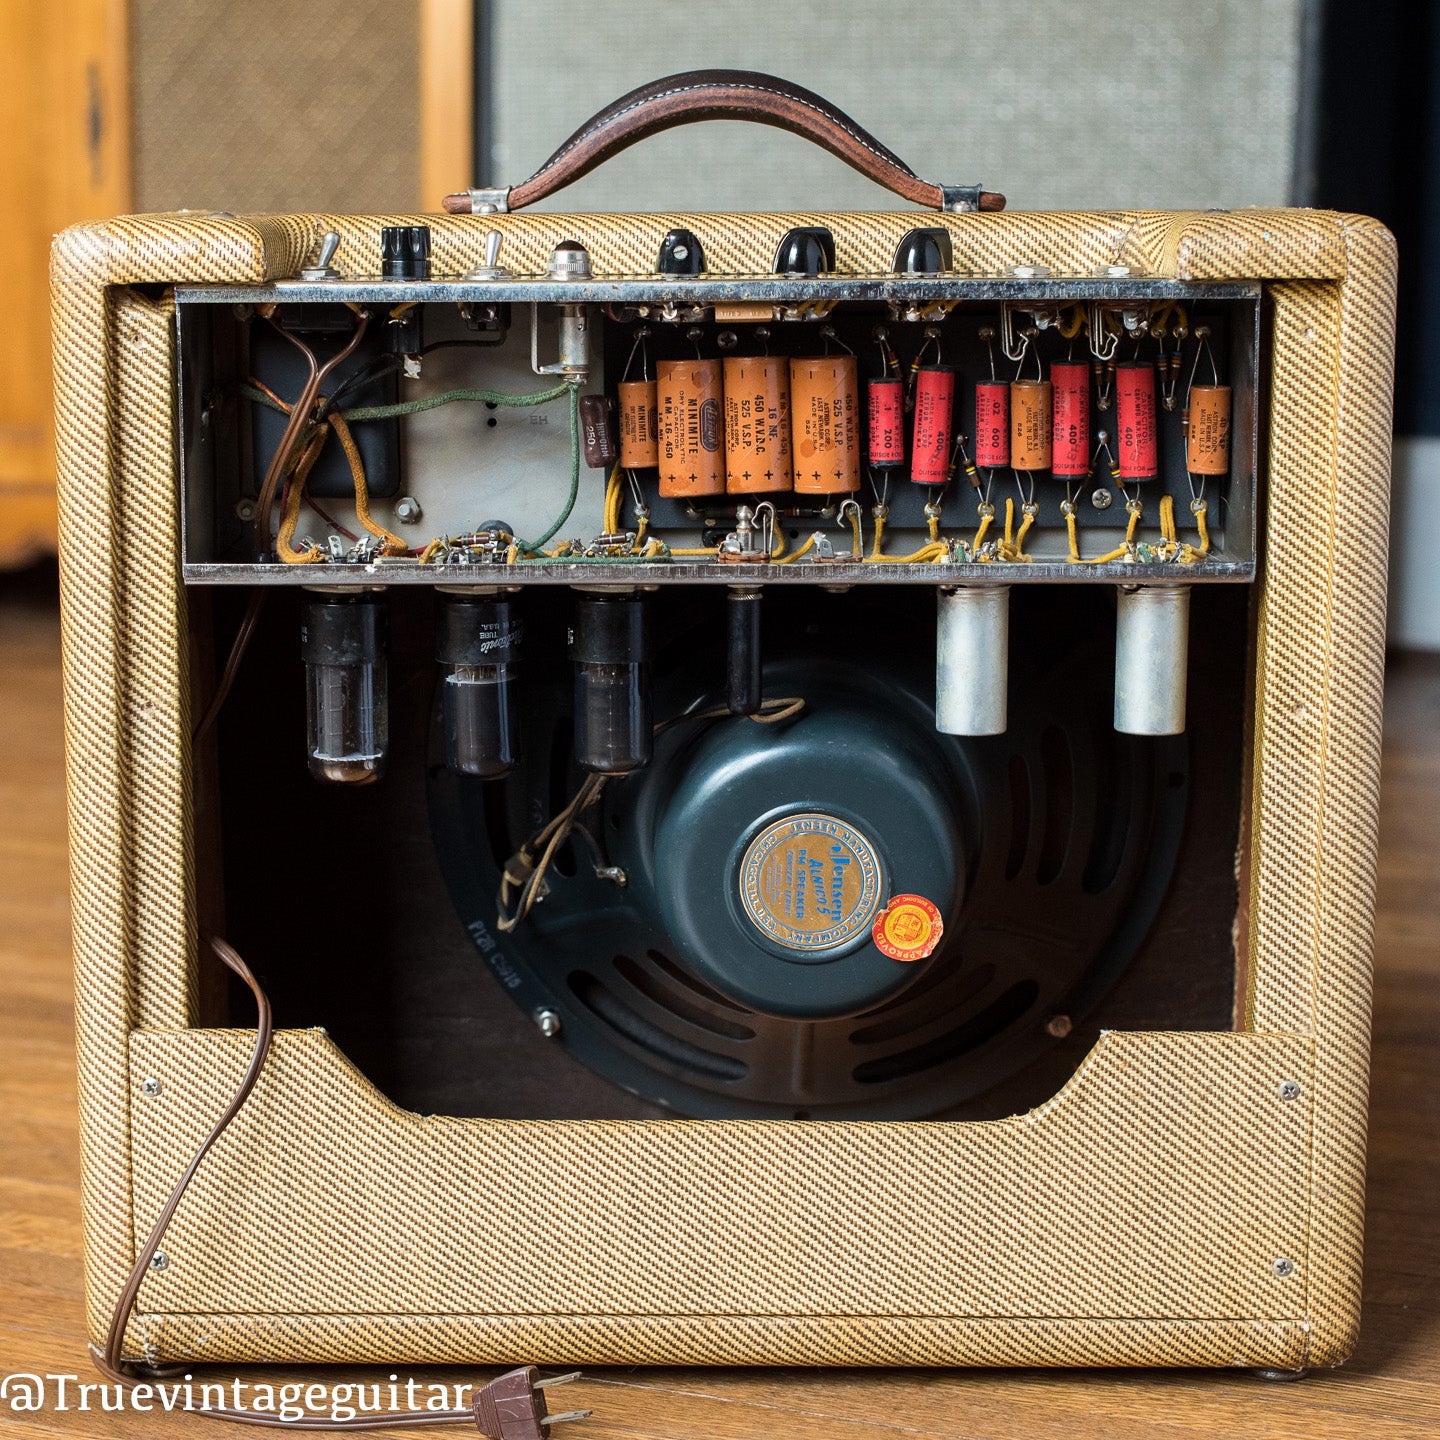 chassis, circuit, capacitors, Jensen speaker, 1955 Fender Deluxe amp tweed